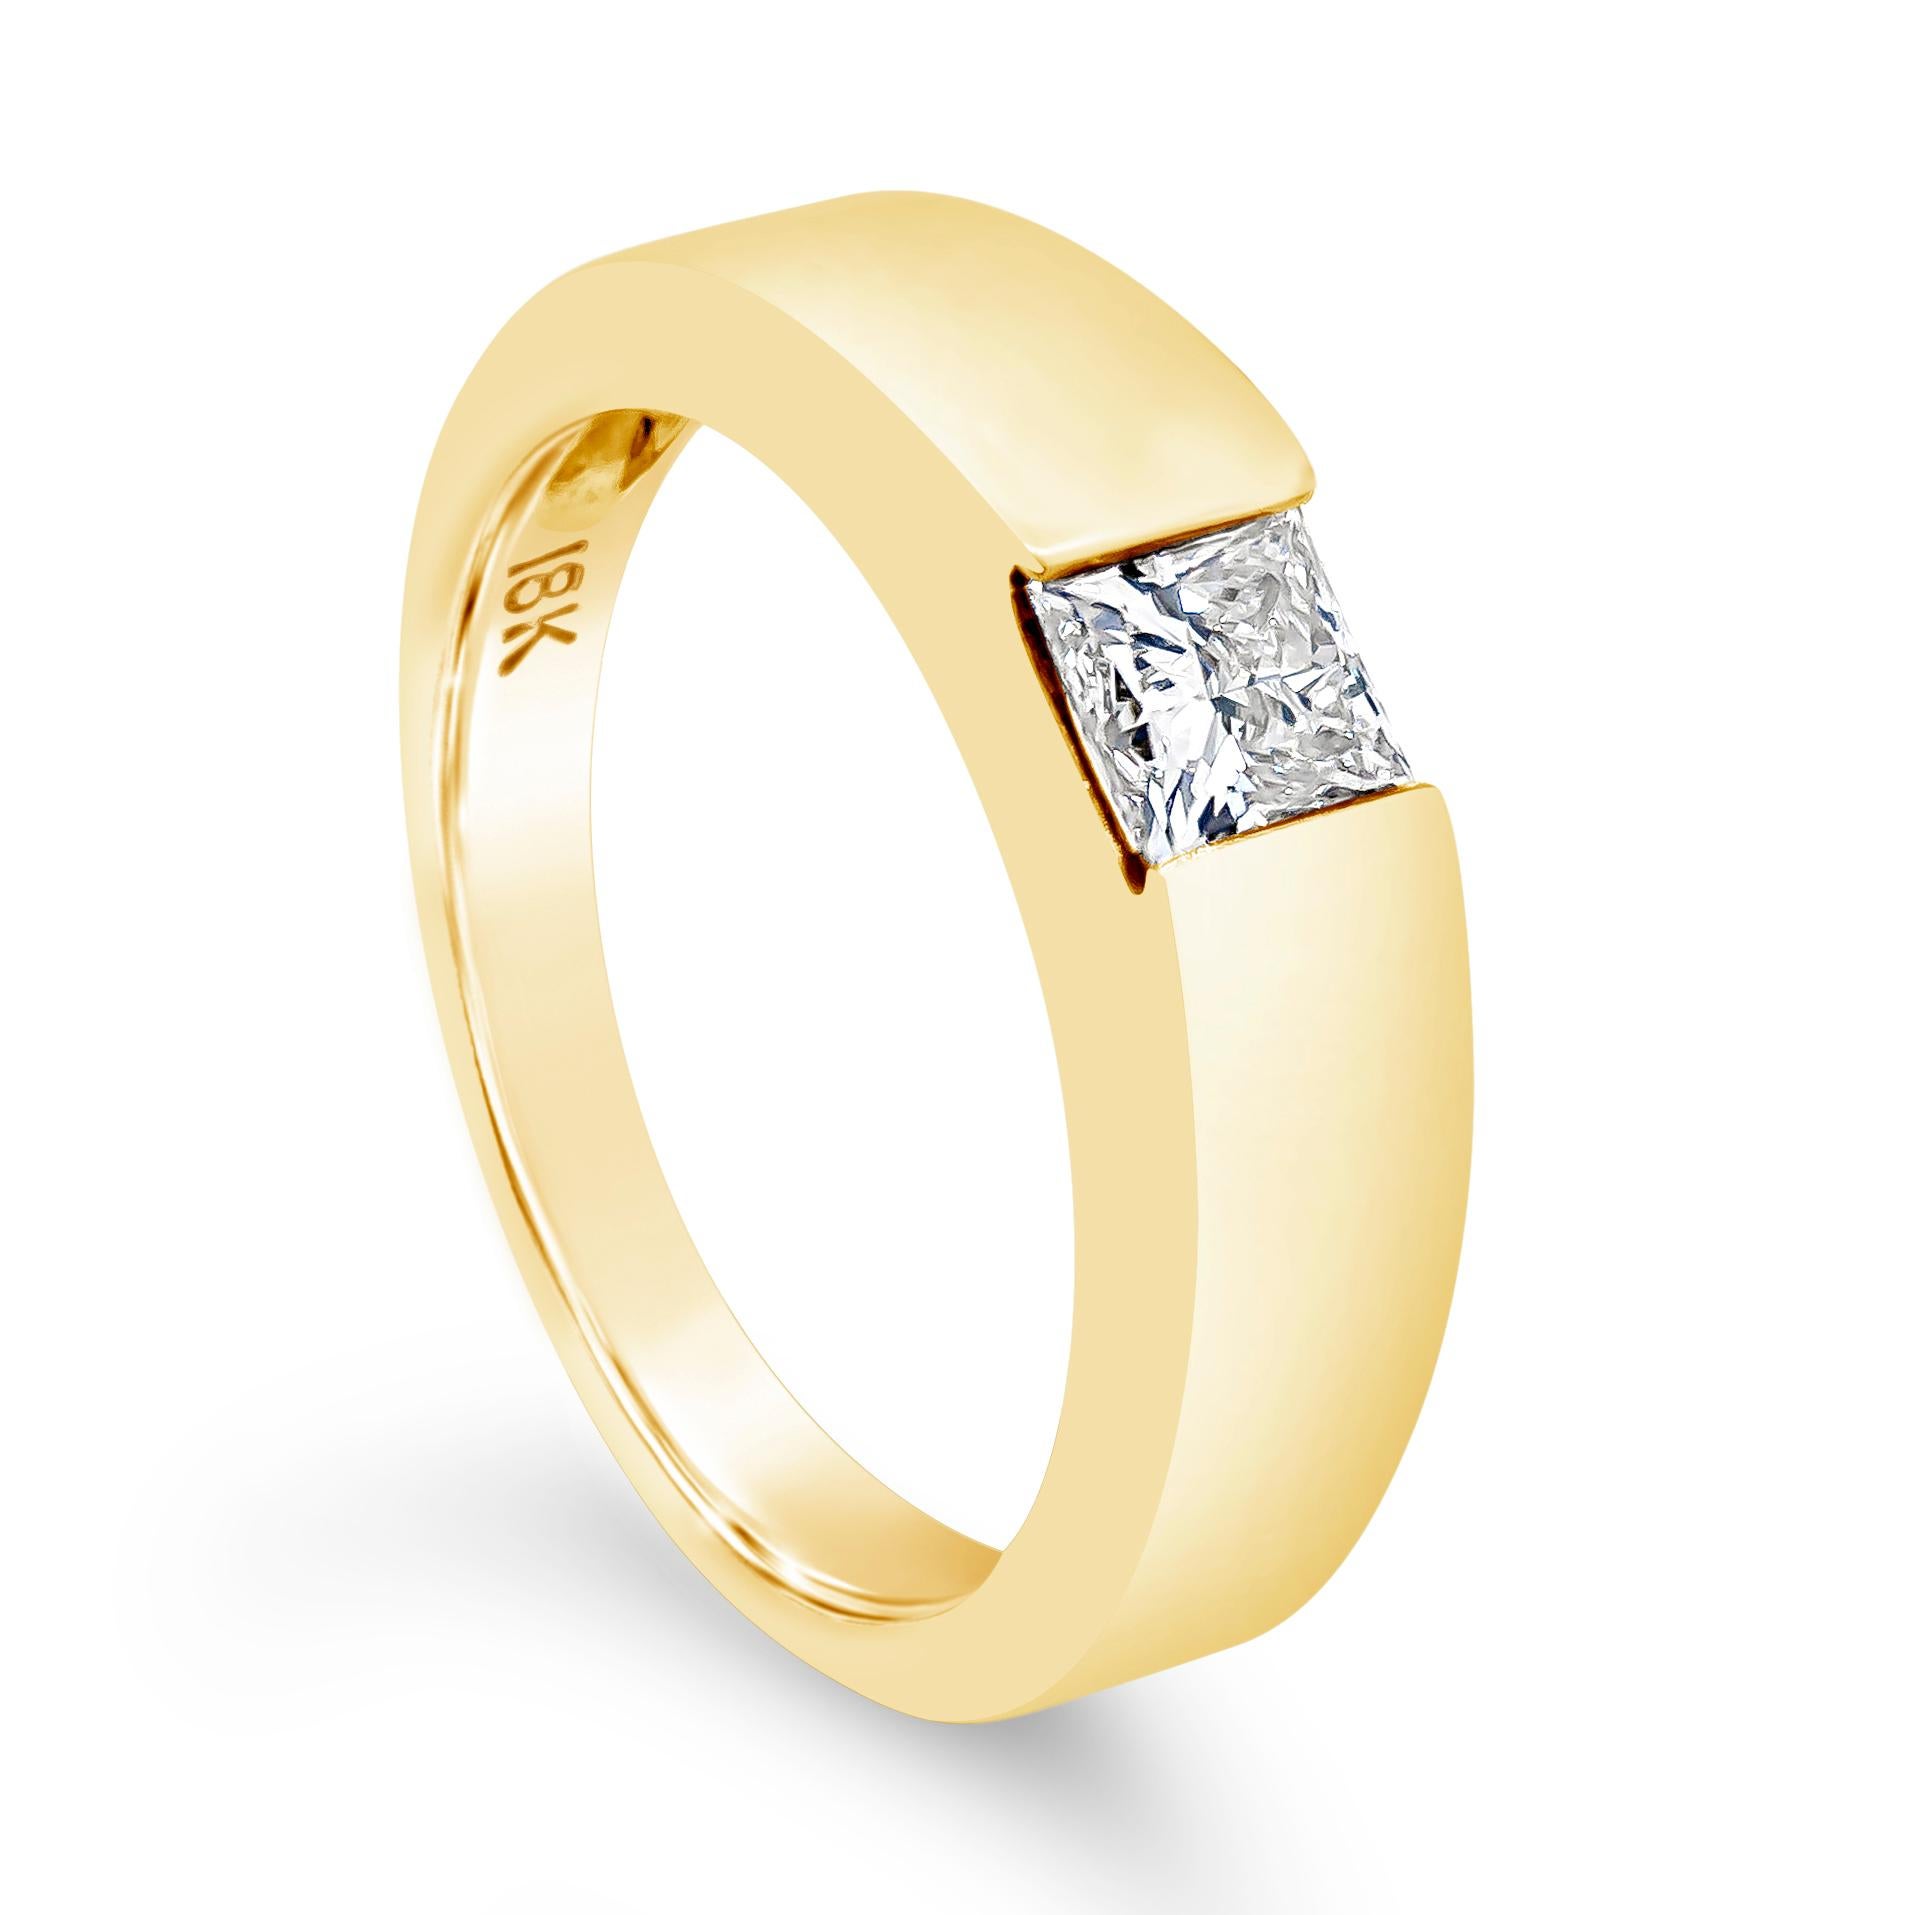 Une bague simple et moderne mettant en valeur un diamant solitaire de taille princesse pesant 0,55 carats, certifié par EGL de couleur J et de pureté VVS2. L'anneau a un design angulaire et effilé, et est serti dans une monture en forme de